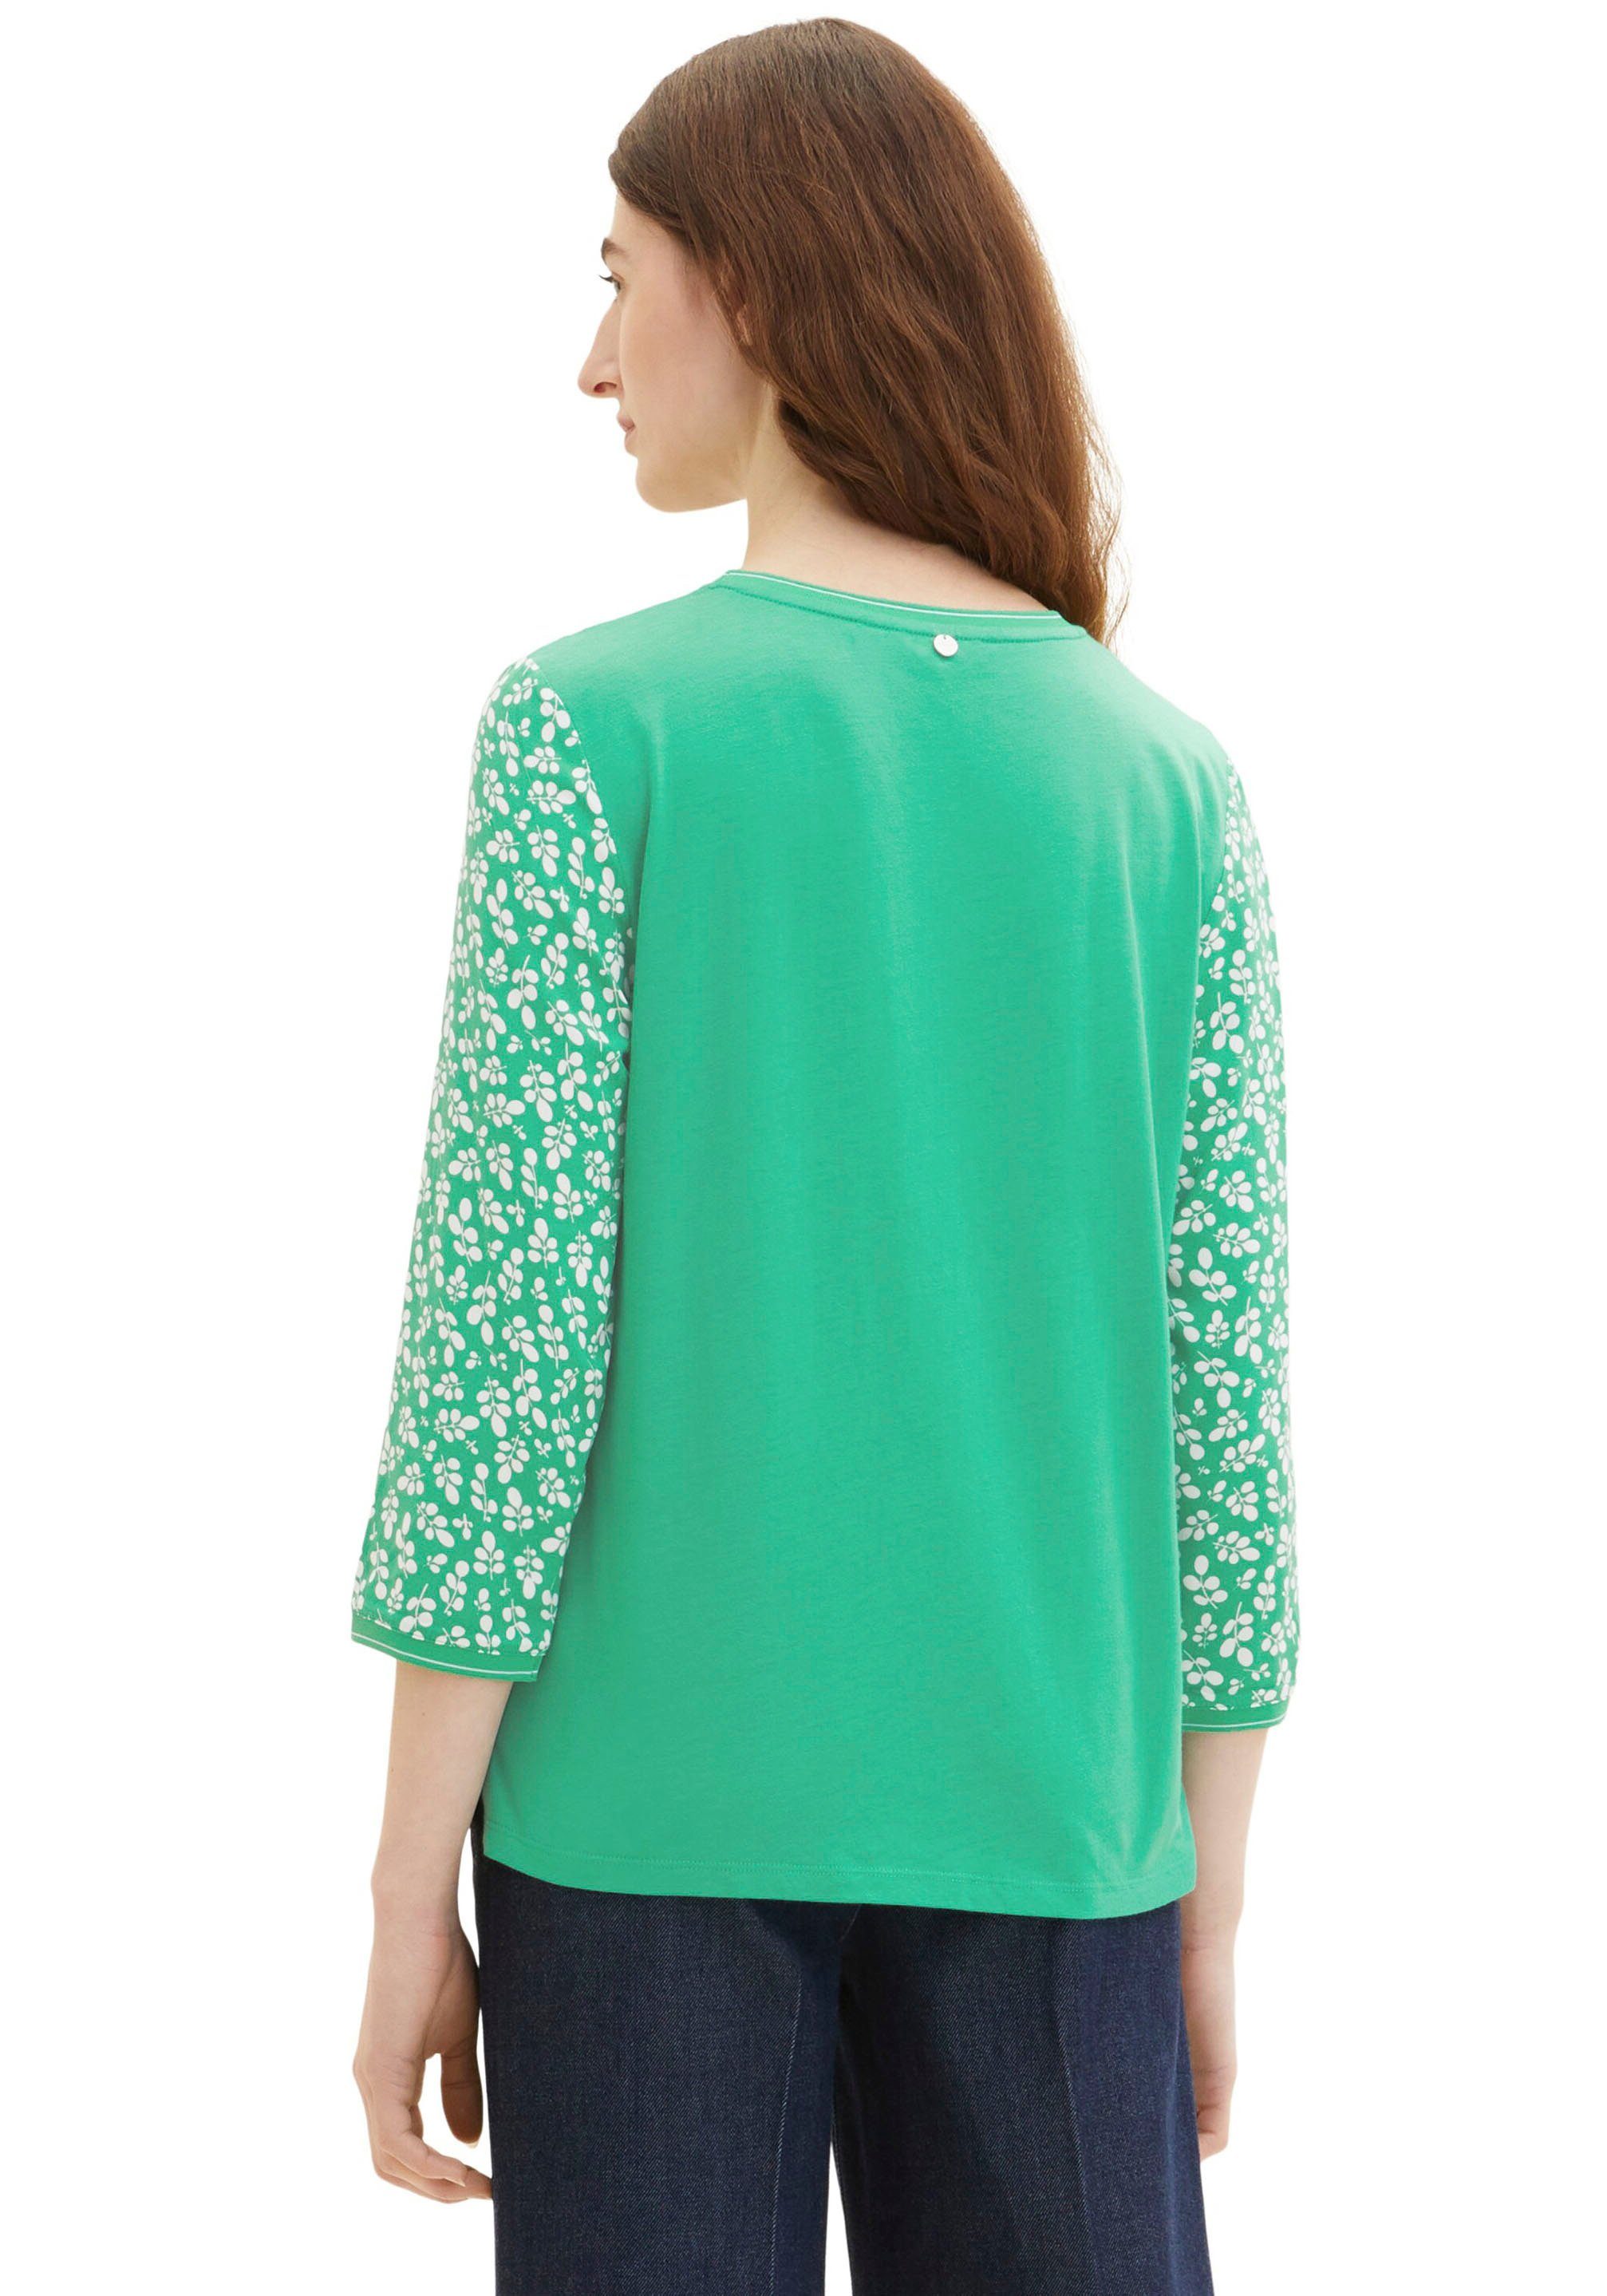 T-Shirt flor mit green TOM Bedruckung TAILOR